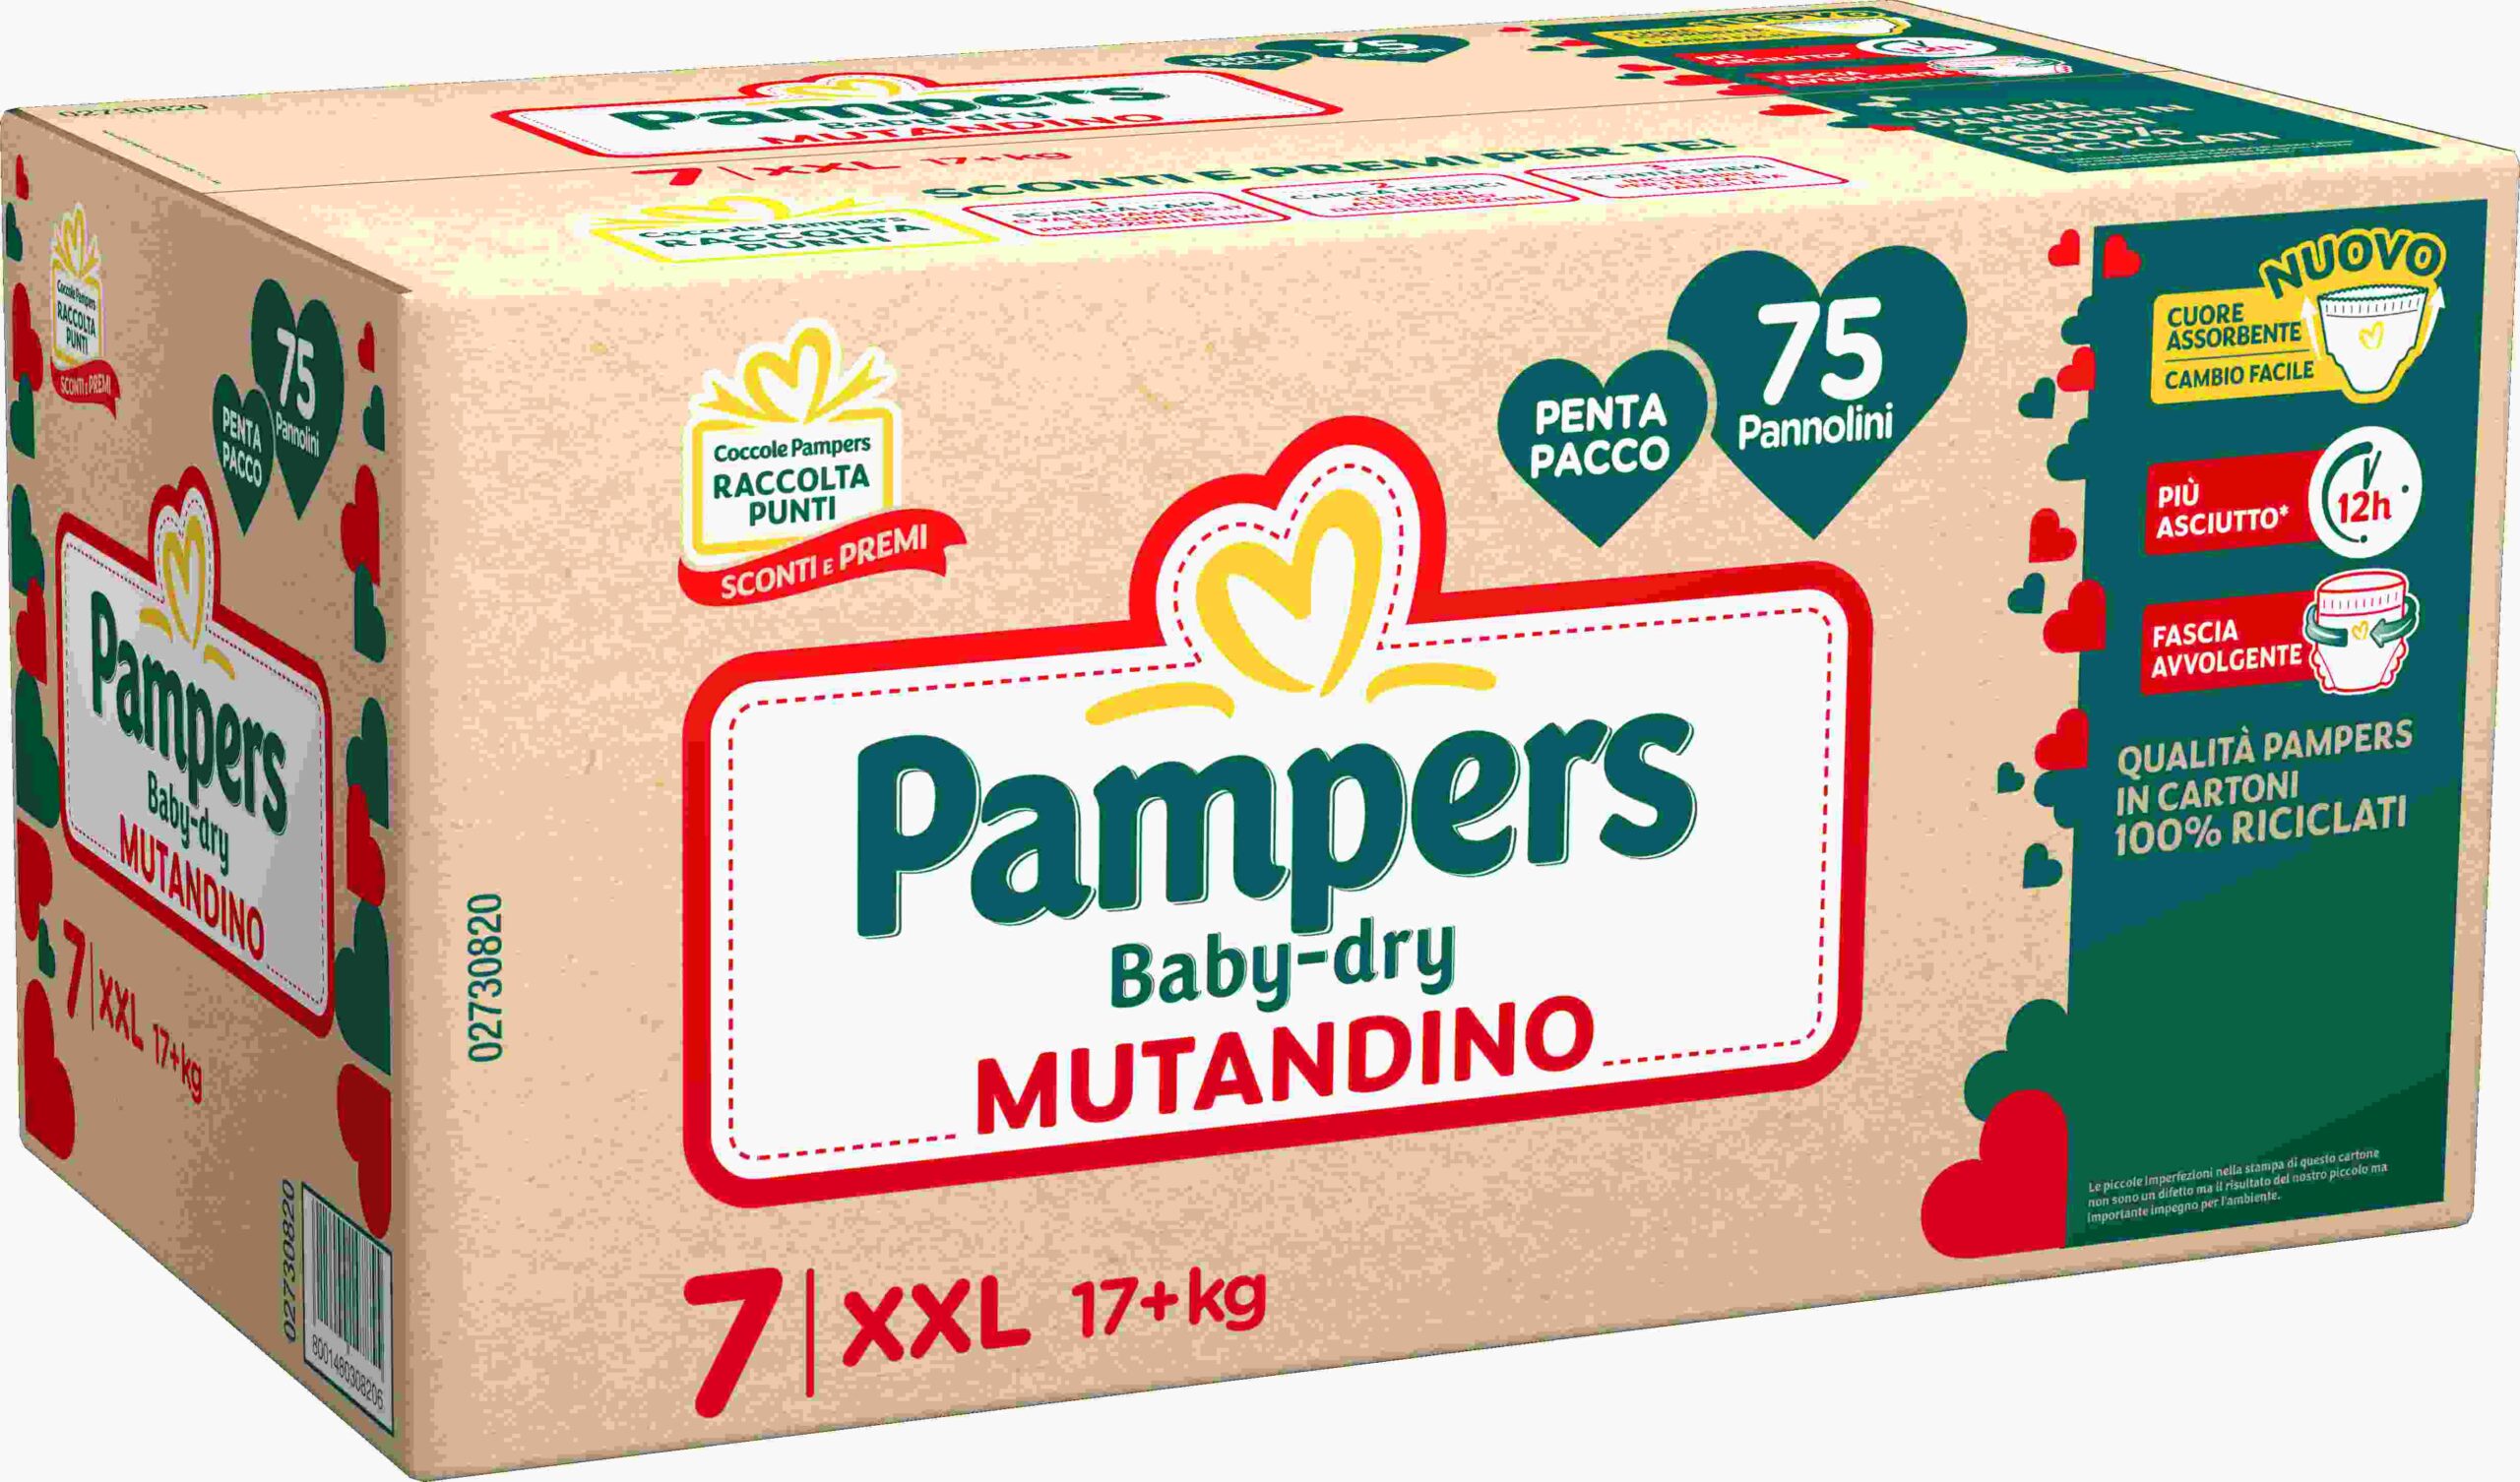 Pampers baby-dry mutandino penta xxl 75 pz